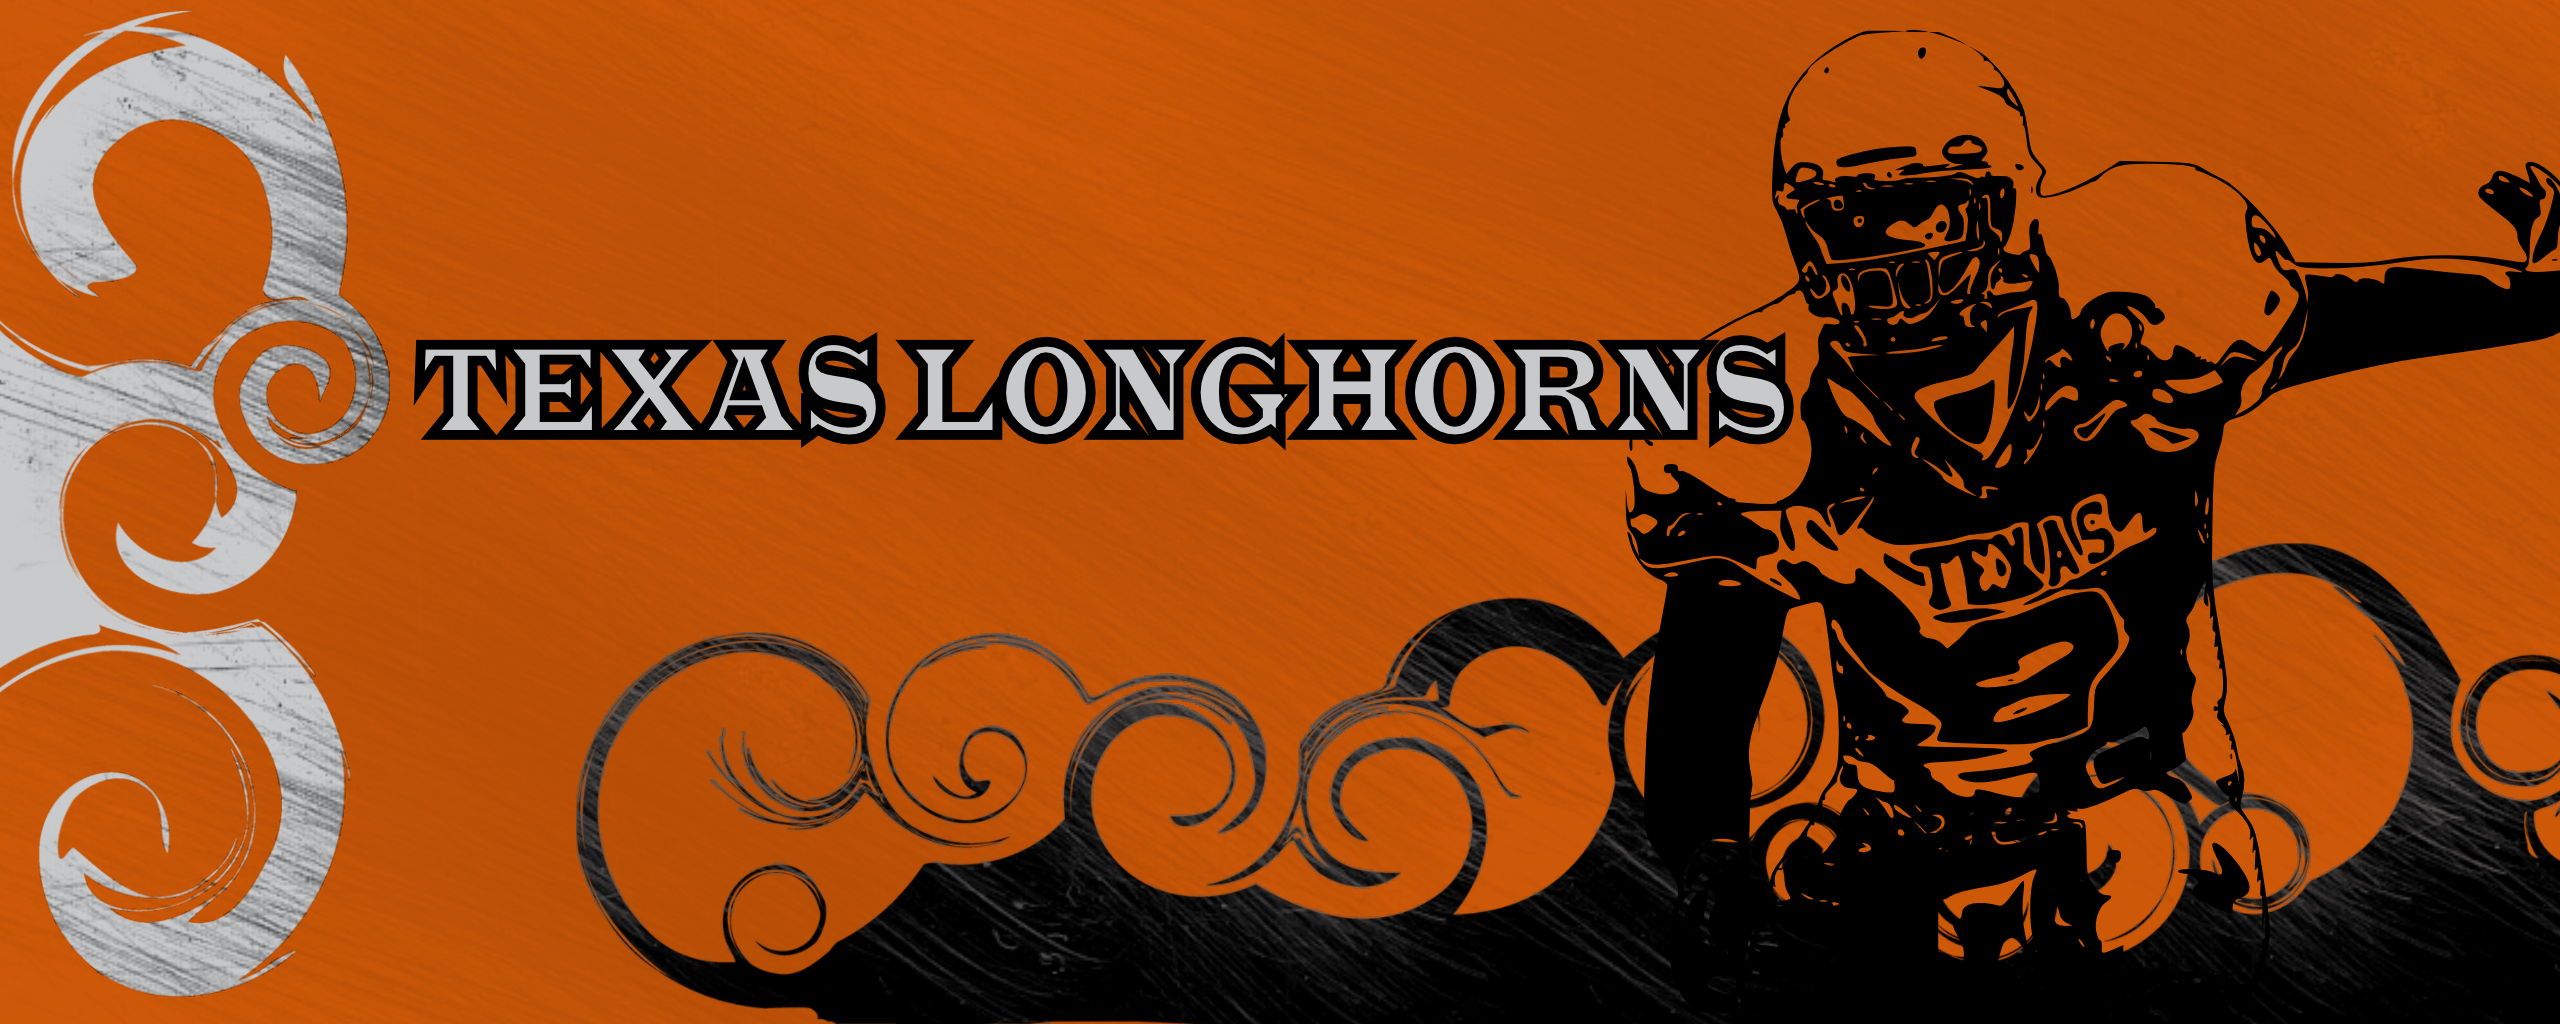 Texas Longhorns Desktop Wallpaper Texas longhorns wallpaper by 2560x1024